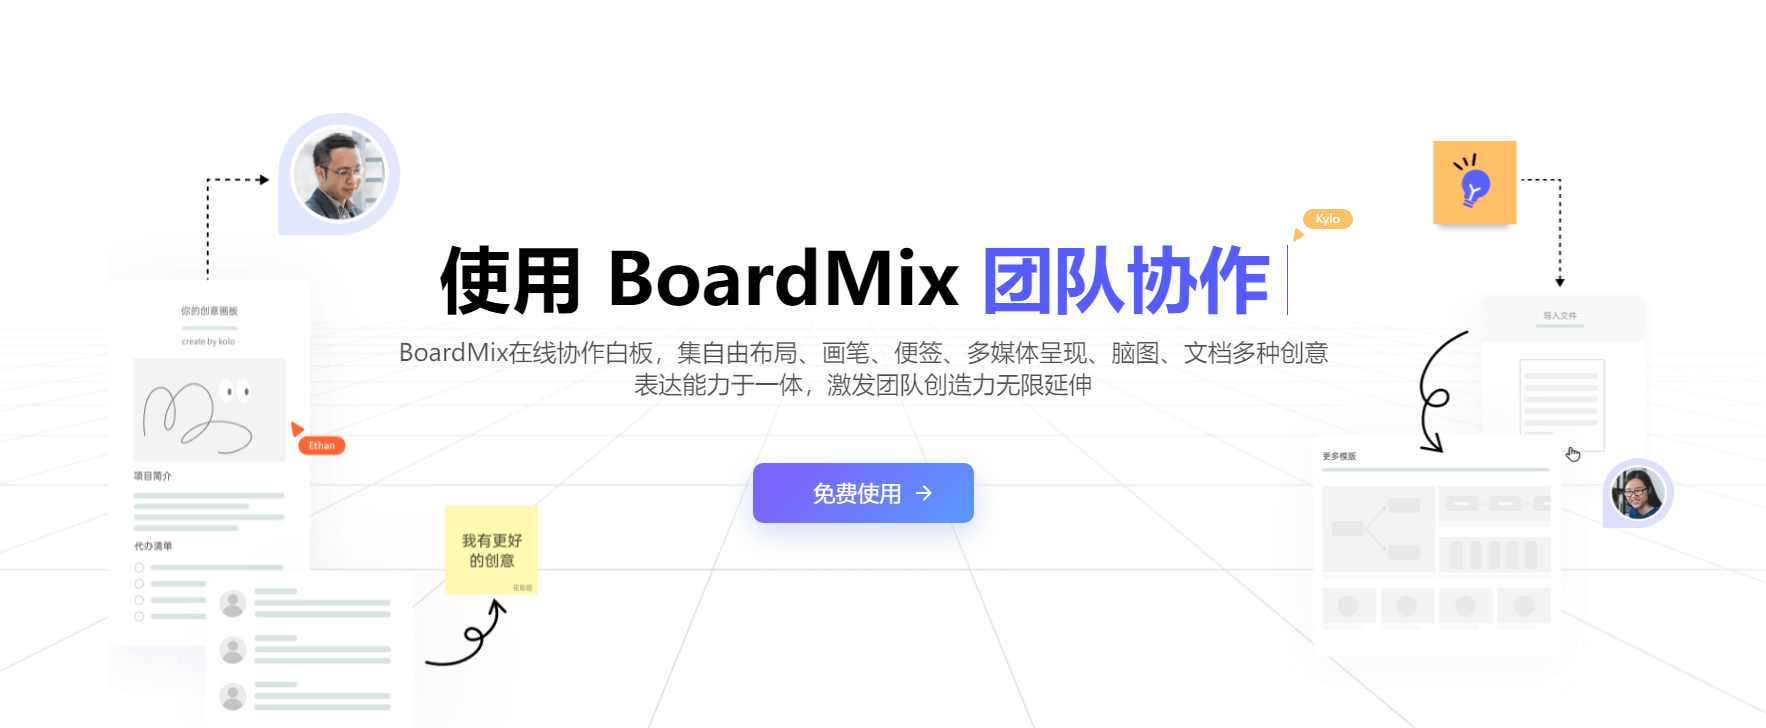 需求管理工具BoardMix博思在线白板